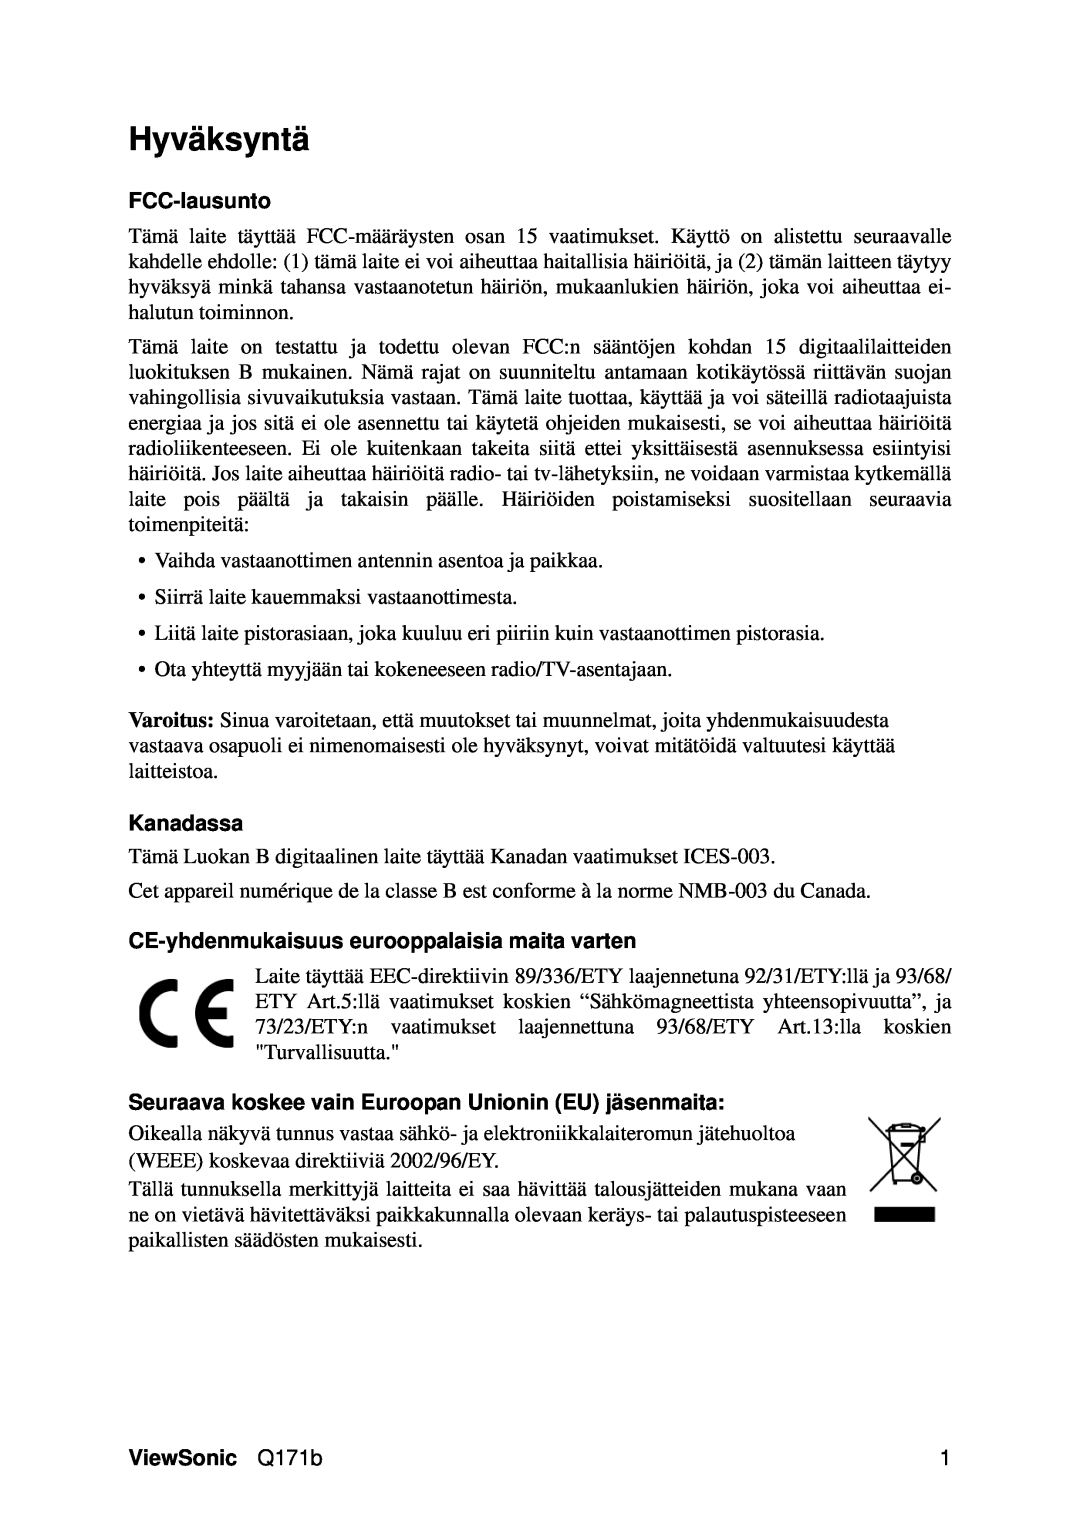 Optiquest VS11351 Hyväksyntä, FCC-lausunto, Kanadassa, CE-yhdenmukaisuus eurooppalaisia maita varten, ViewSonic Q171b 